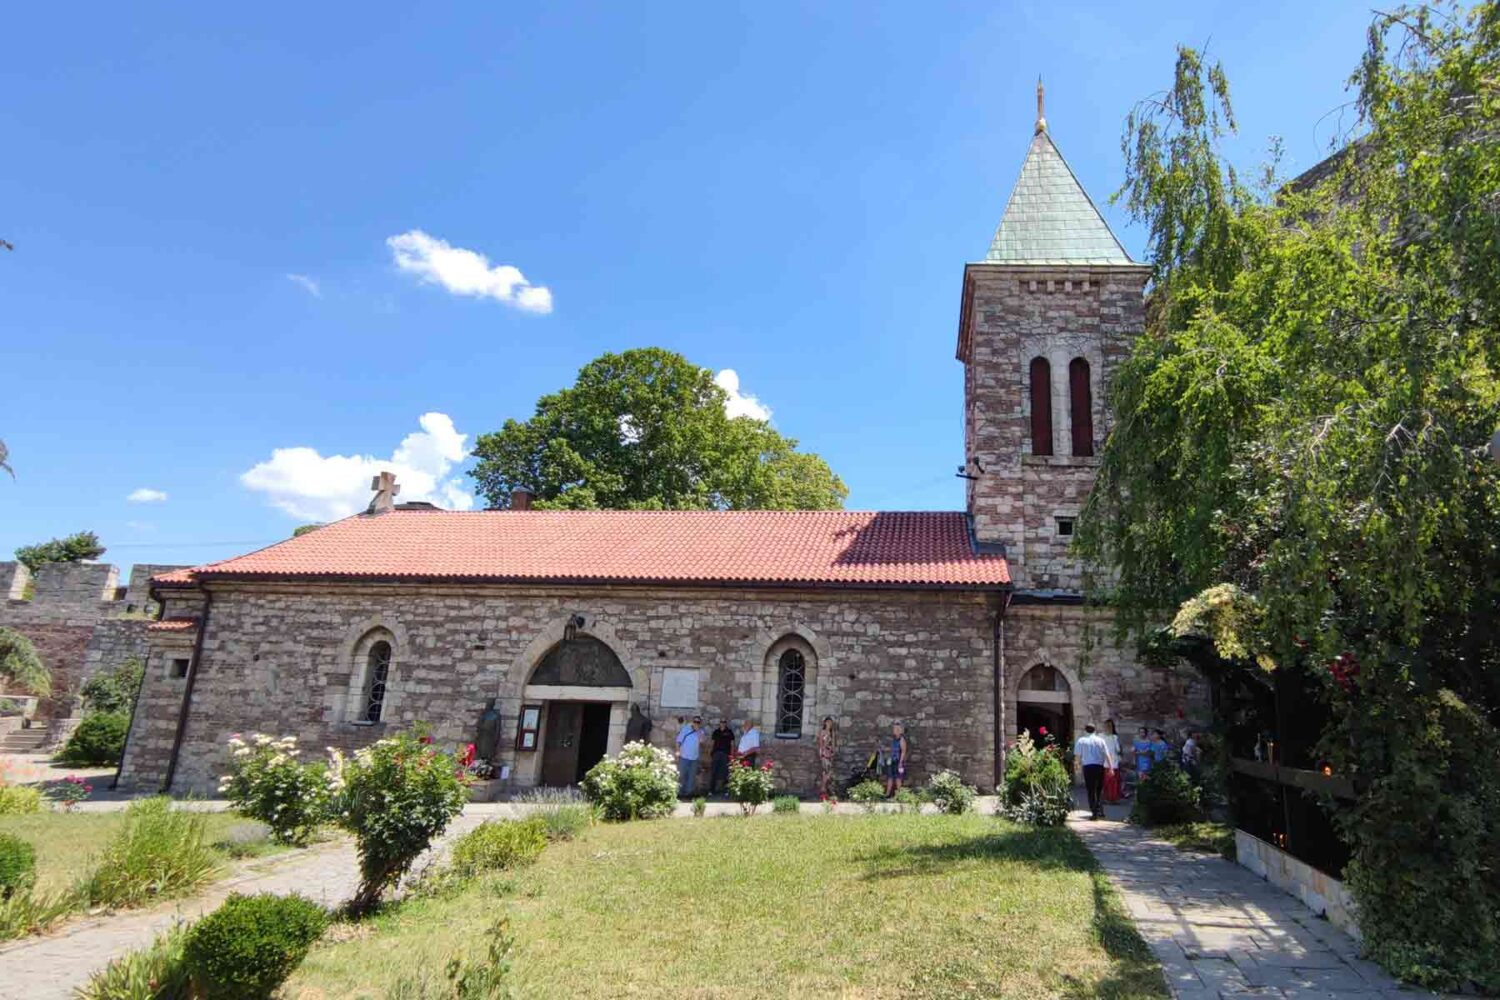 Crkve u Beogradu - crkva Ruzica